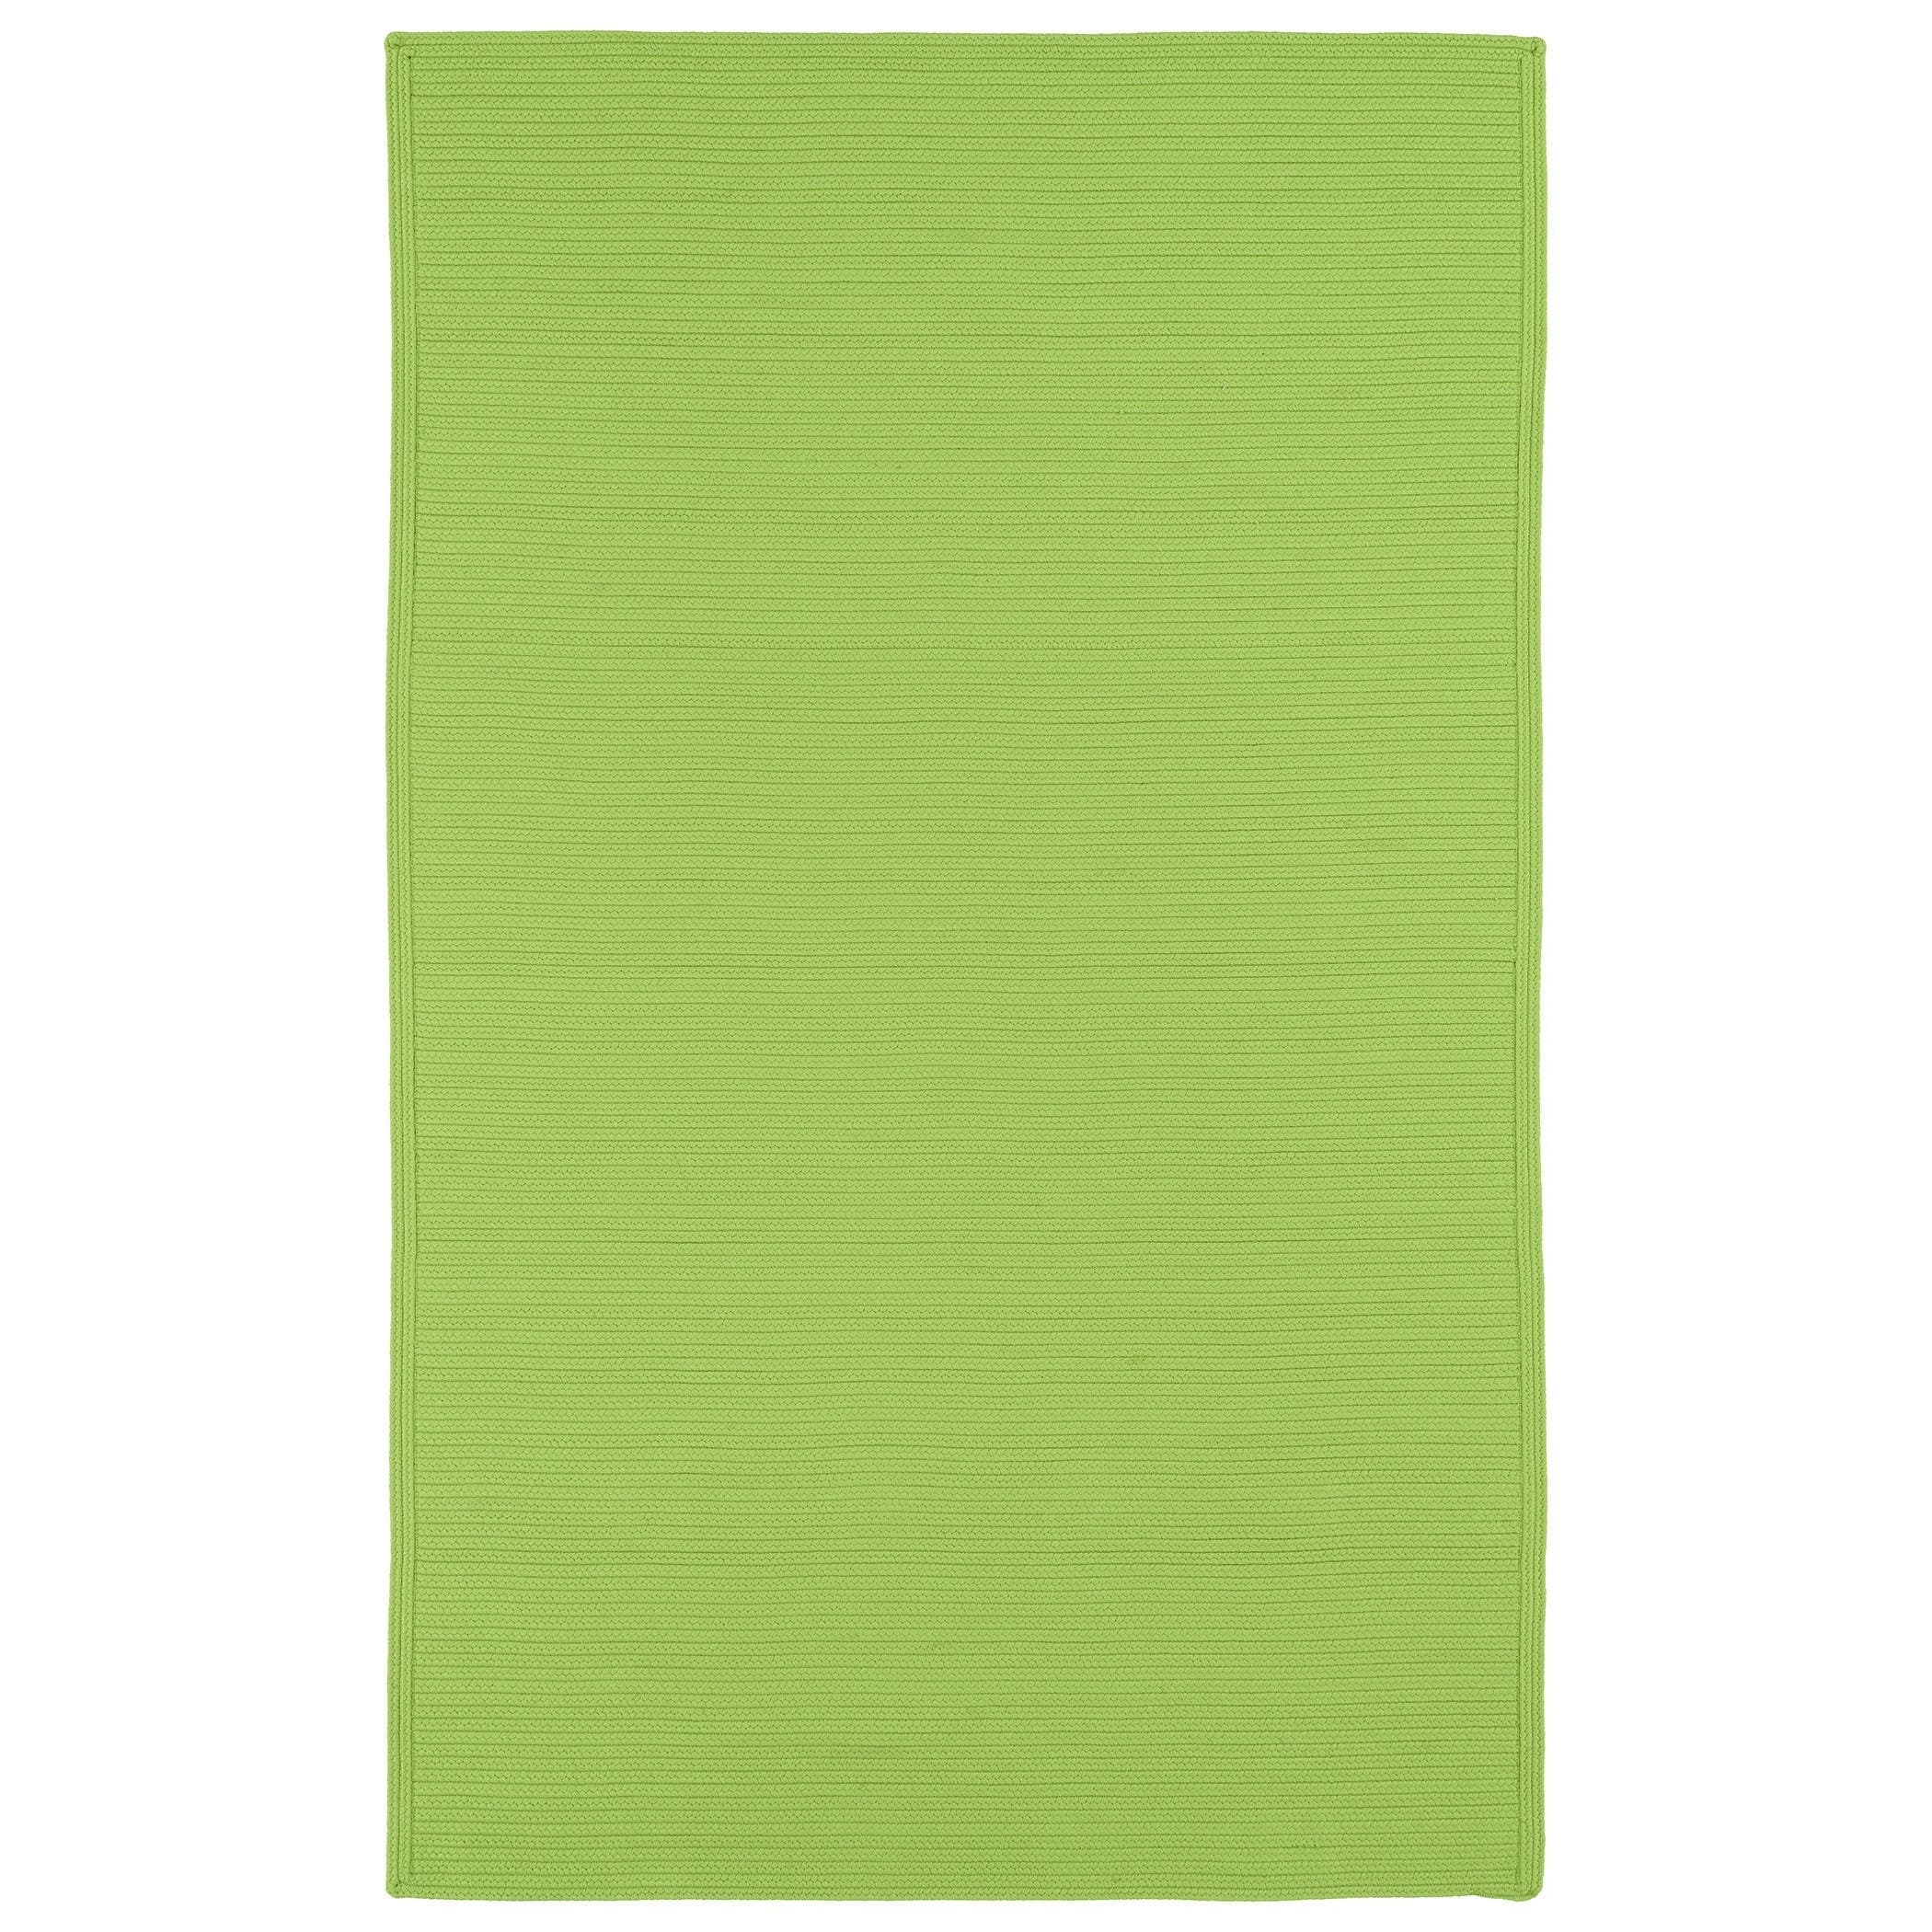 Indoor/ Outdoor Malibu Woven Lime Green Rug (9 X 12)